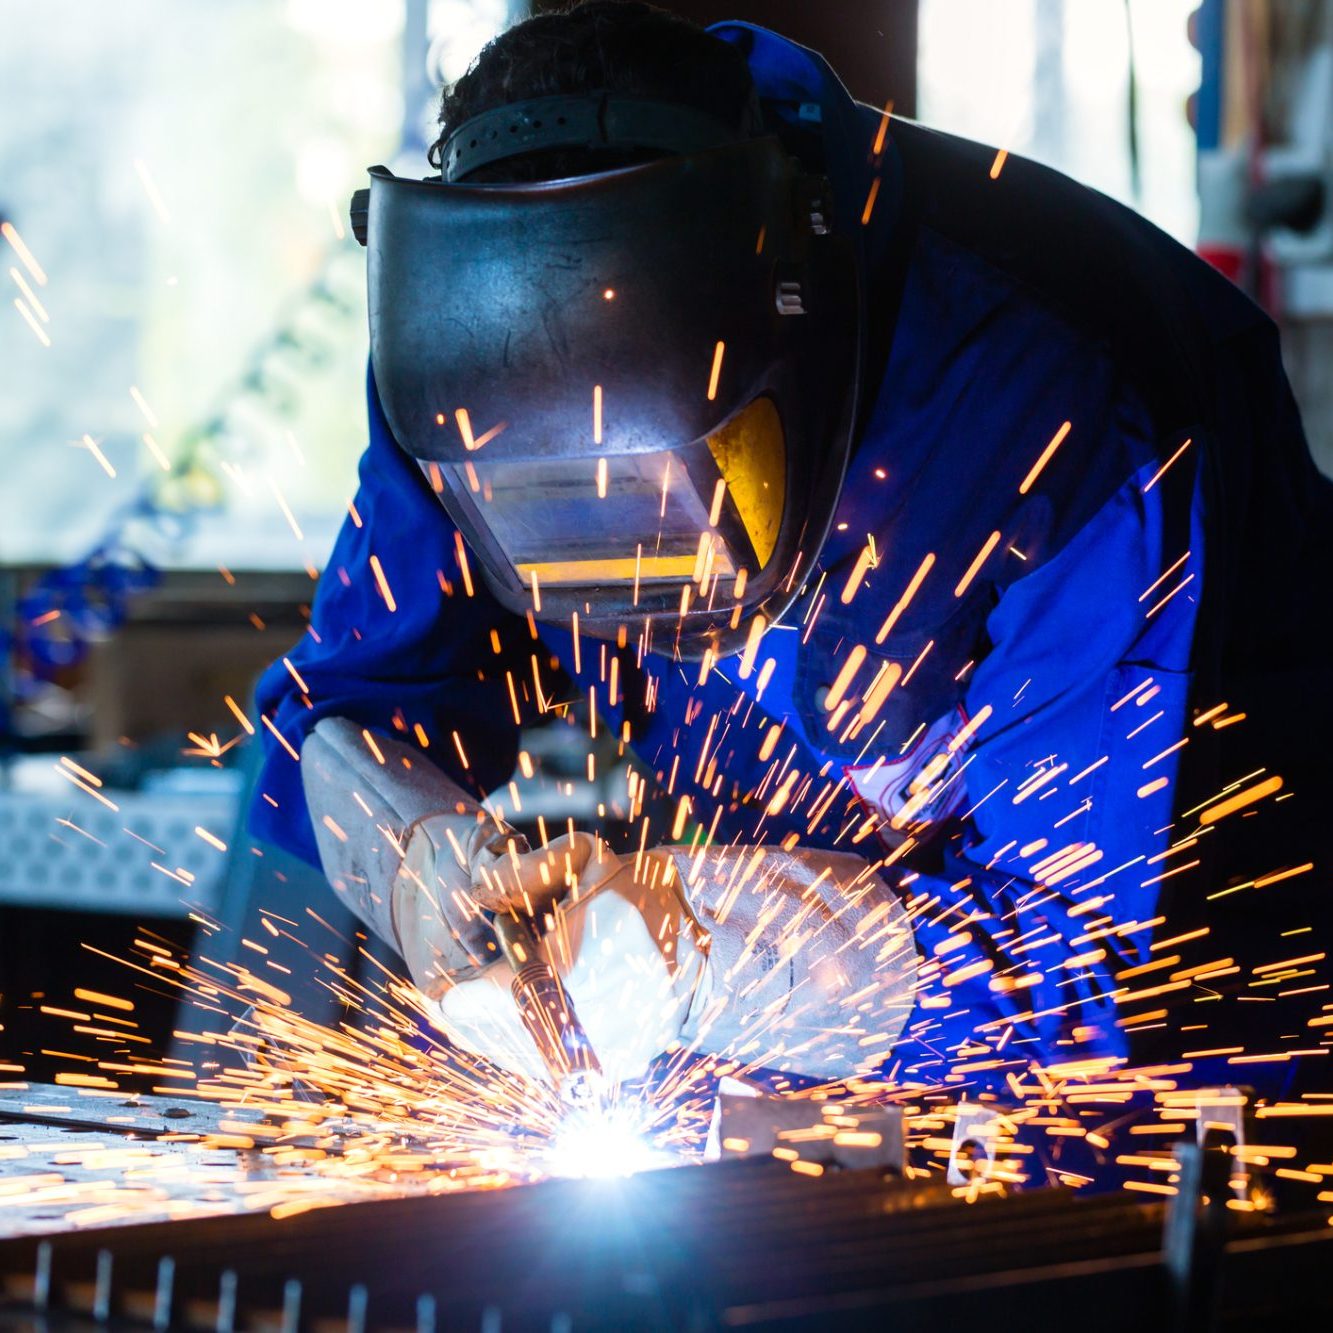 Welder bonding metal with welding device in workshop, lots of sparks to be seen, he wears welding googles